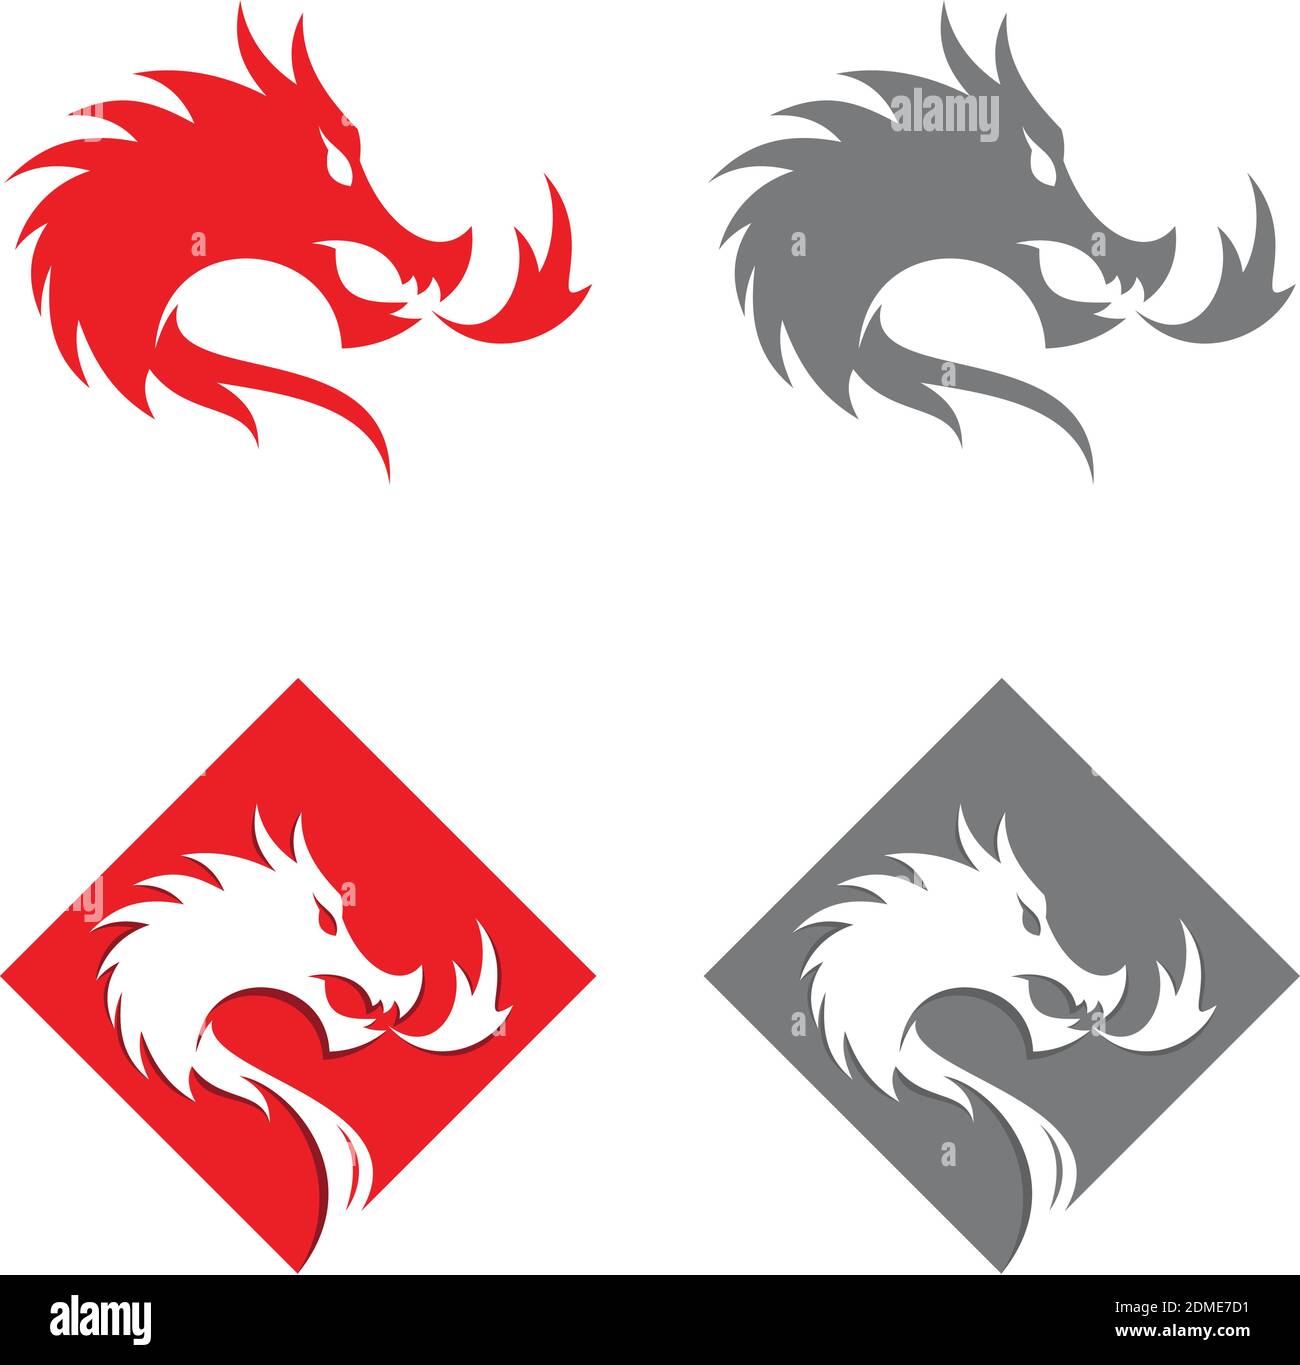 Illustrazioni vettoriali stilizzate di sagome dei draghi a forma di quadrato su sfondo bianco. Disegno creativo drago vettoriale. Illus vettore Illustrazione Vettoriale